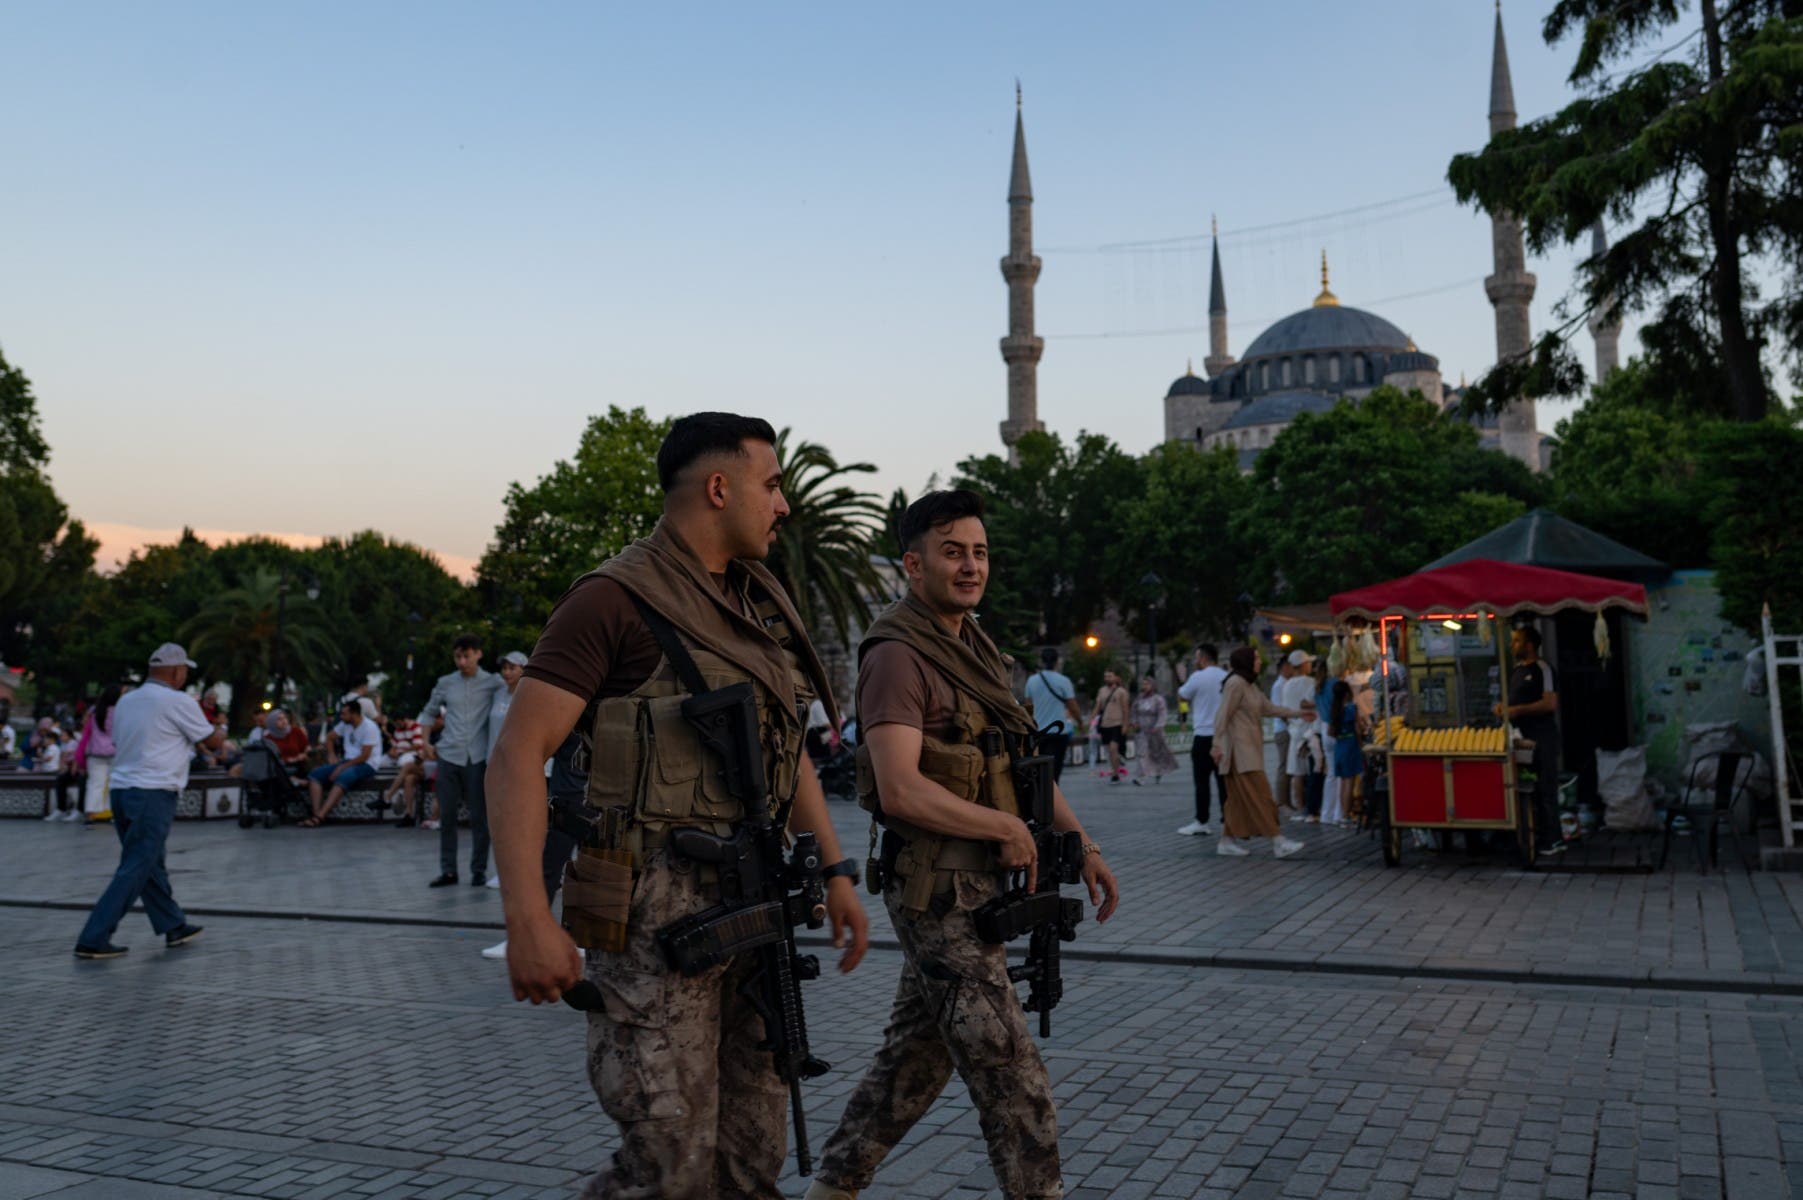 ضابطان تركيان من شرطة مكافحة الشغب يمشيان أمام المسجد الأزرق في اسطنبول (أ ف ب)